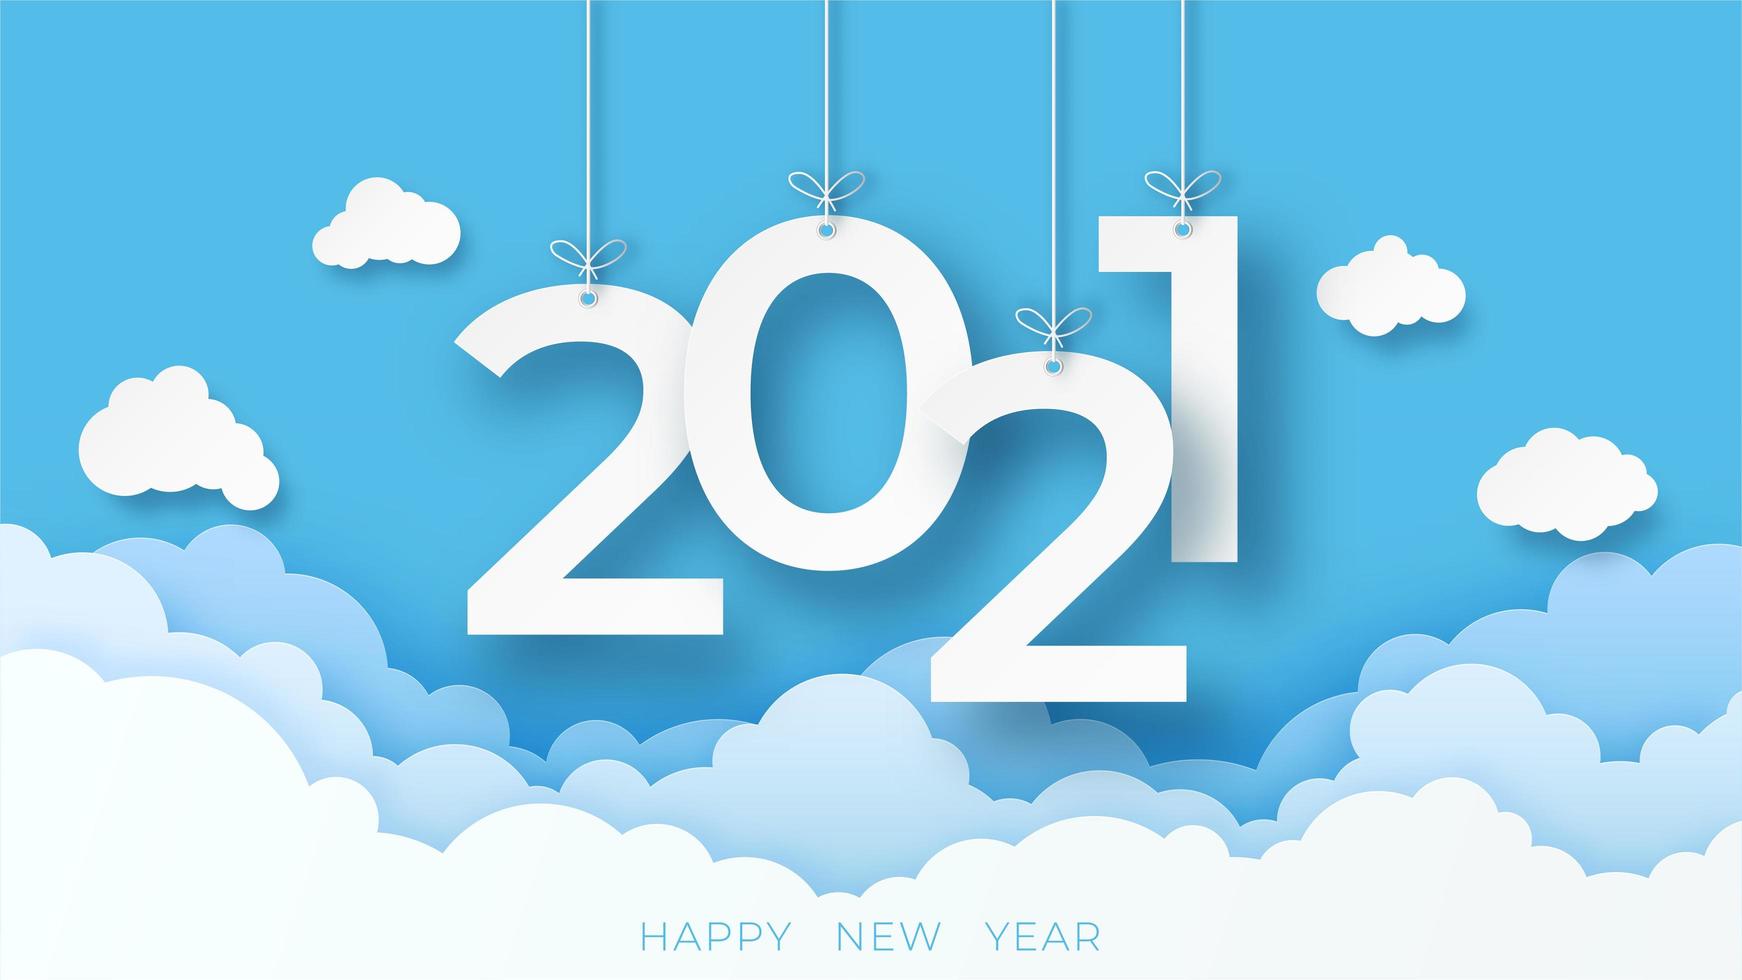 felice anno nuovo 2021 banner con nuvole in stile taglio carta vettore